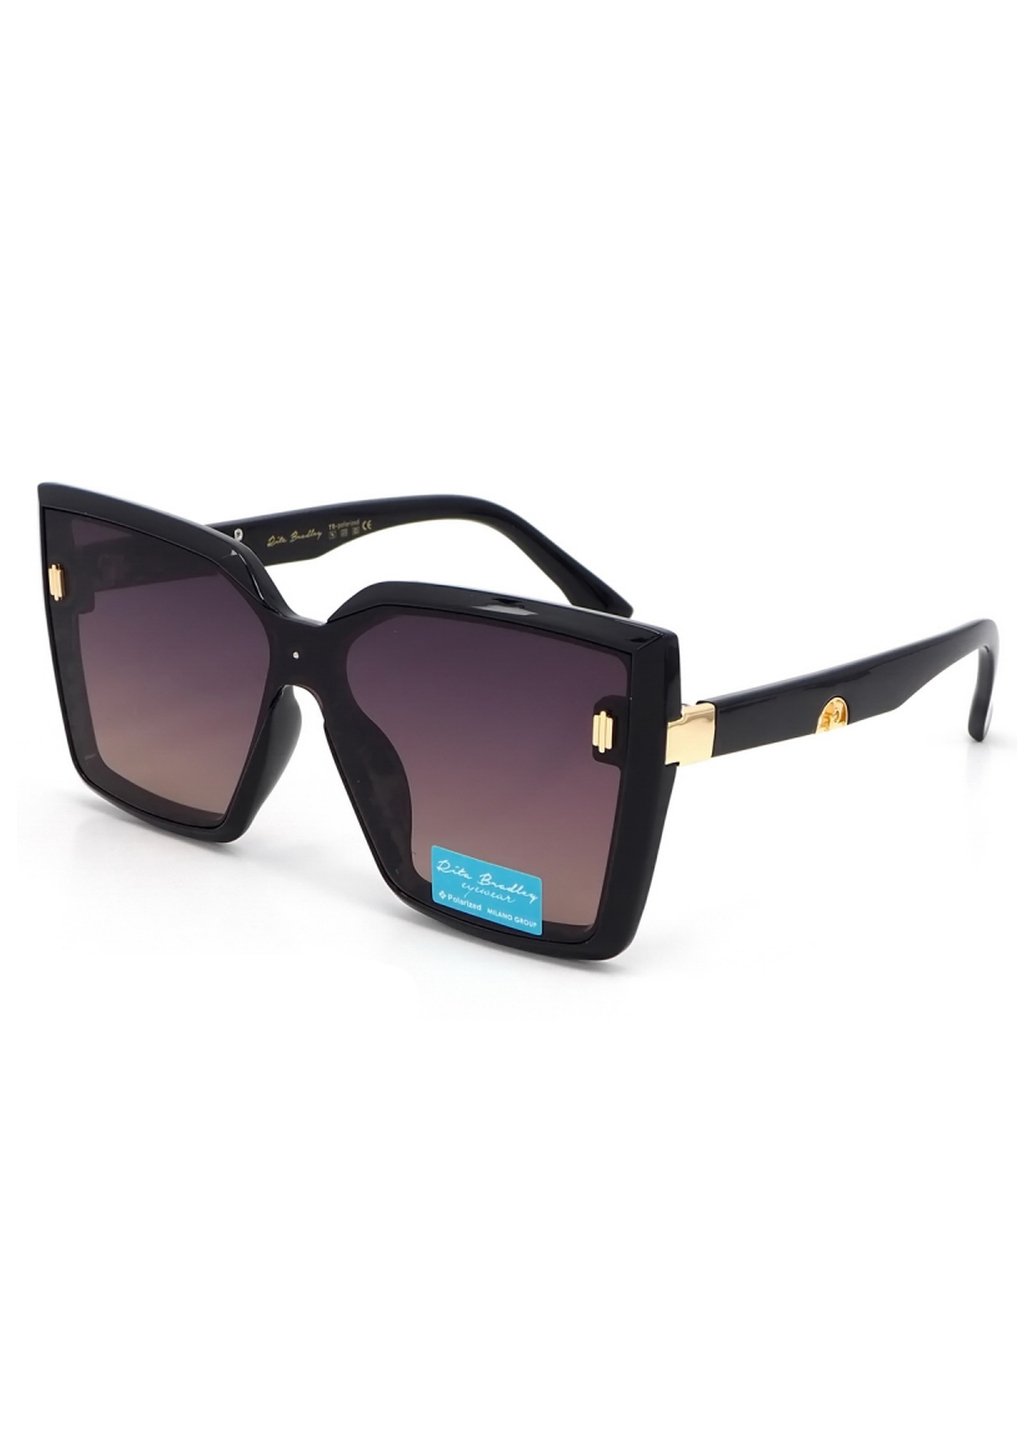 Купить Женские солнцезащитные очки Rita Bradley с поляризацией RB728 112063 в интернет-магазине